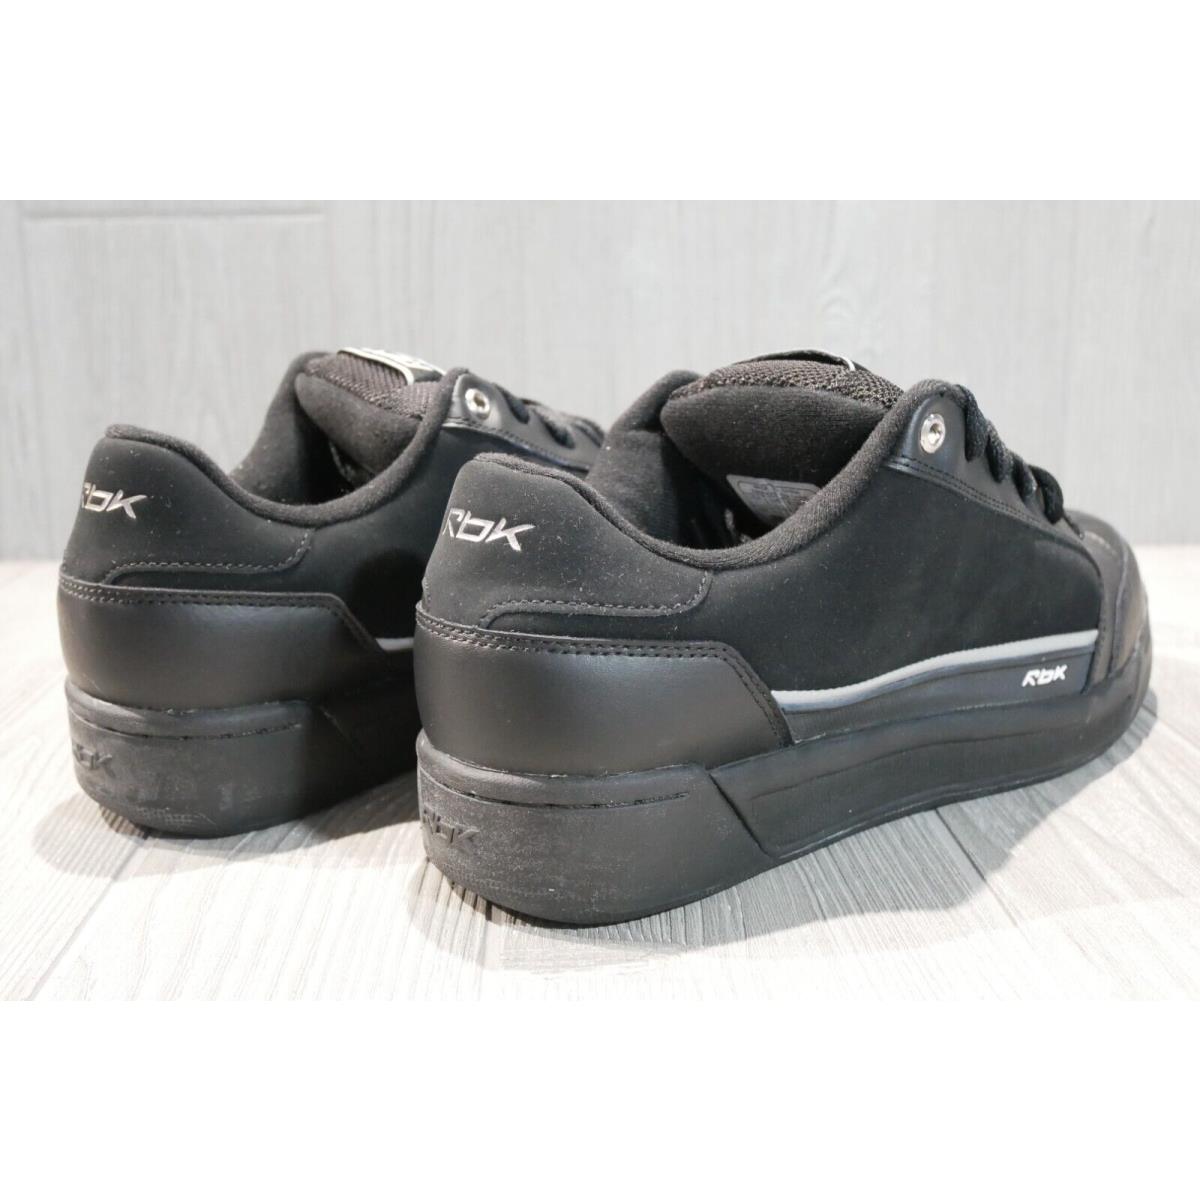 Reebok shoes RBK - Black 3